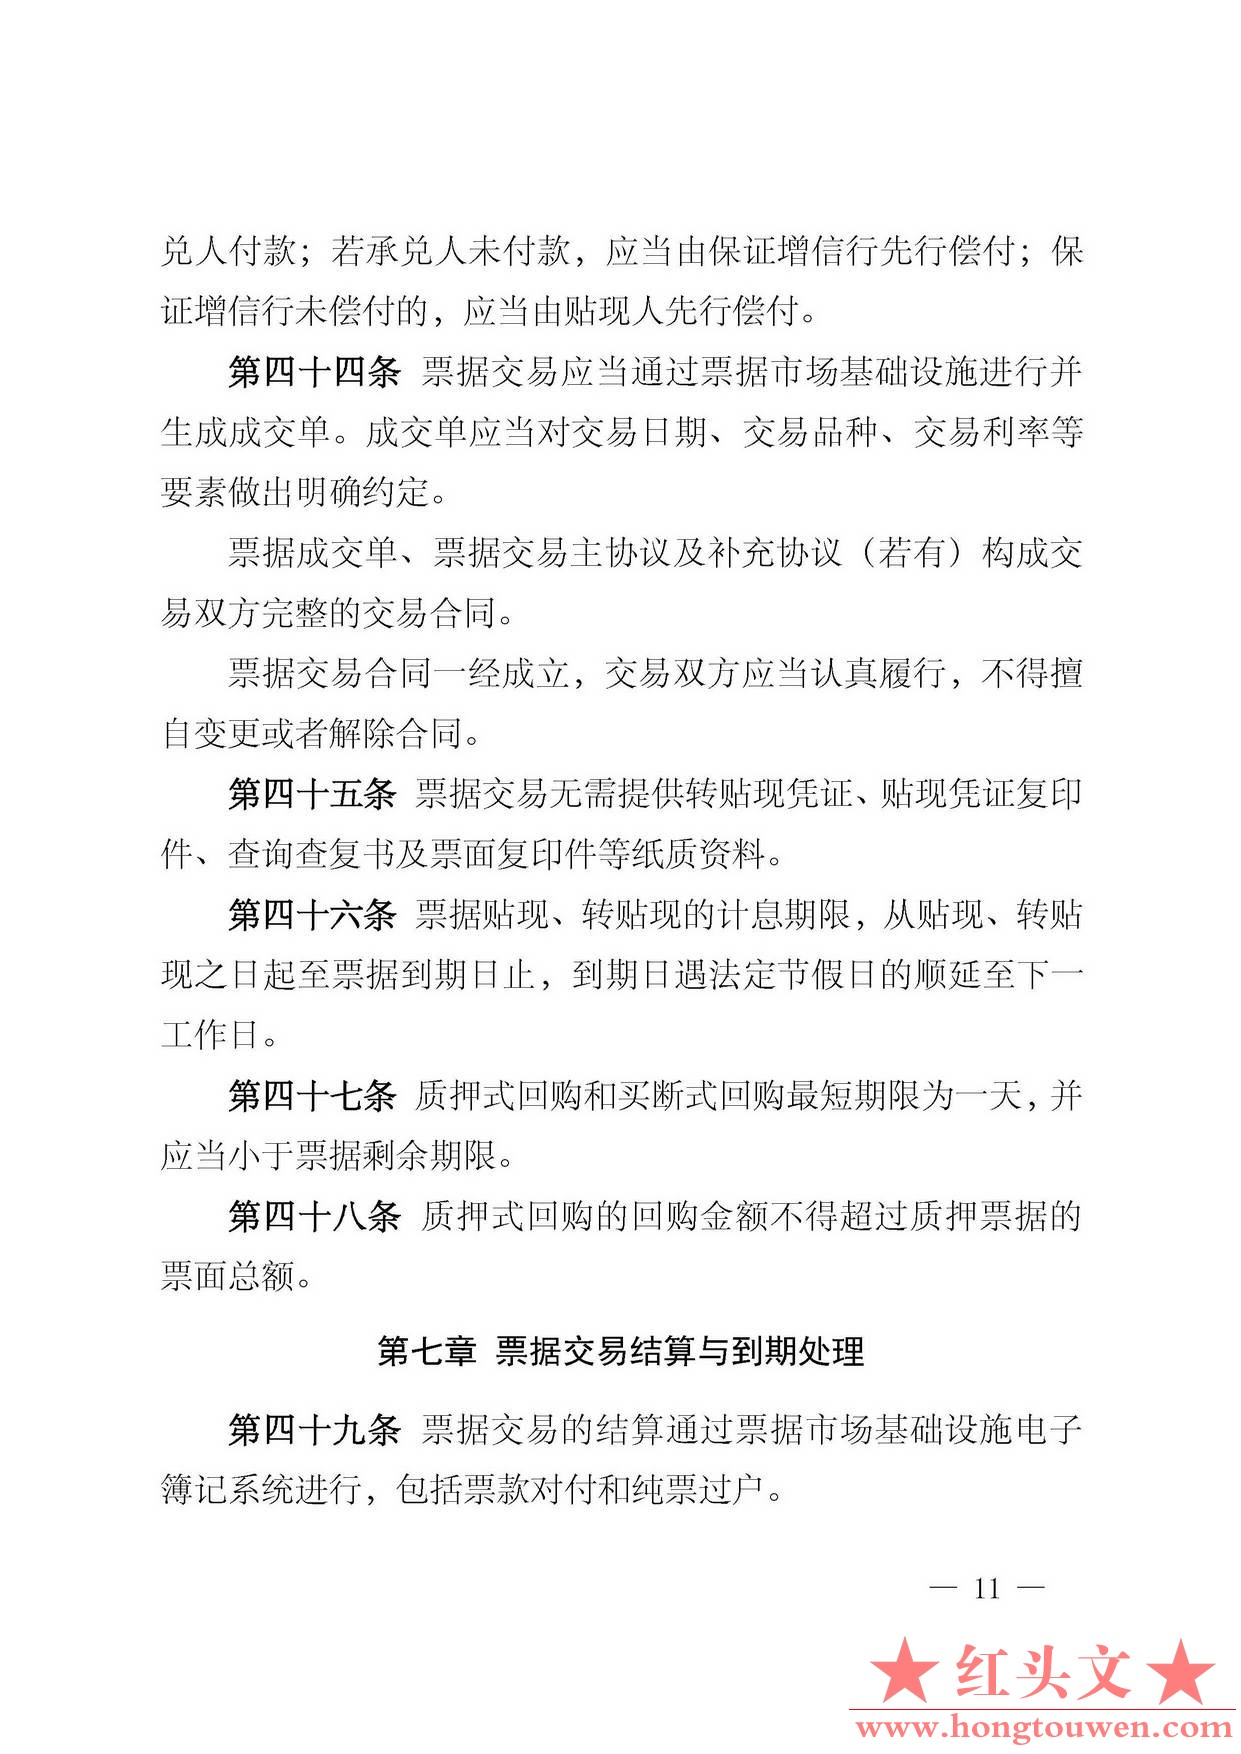 中国人民银行公告[2016]29号-票据交易管理办法_页面_11.jpg